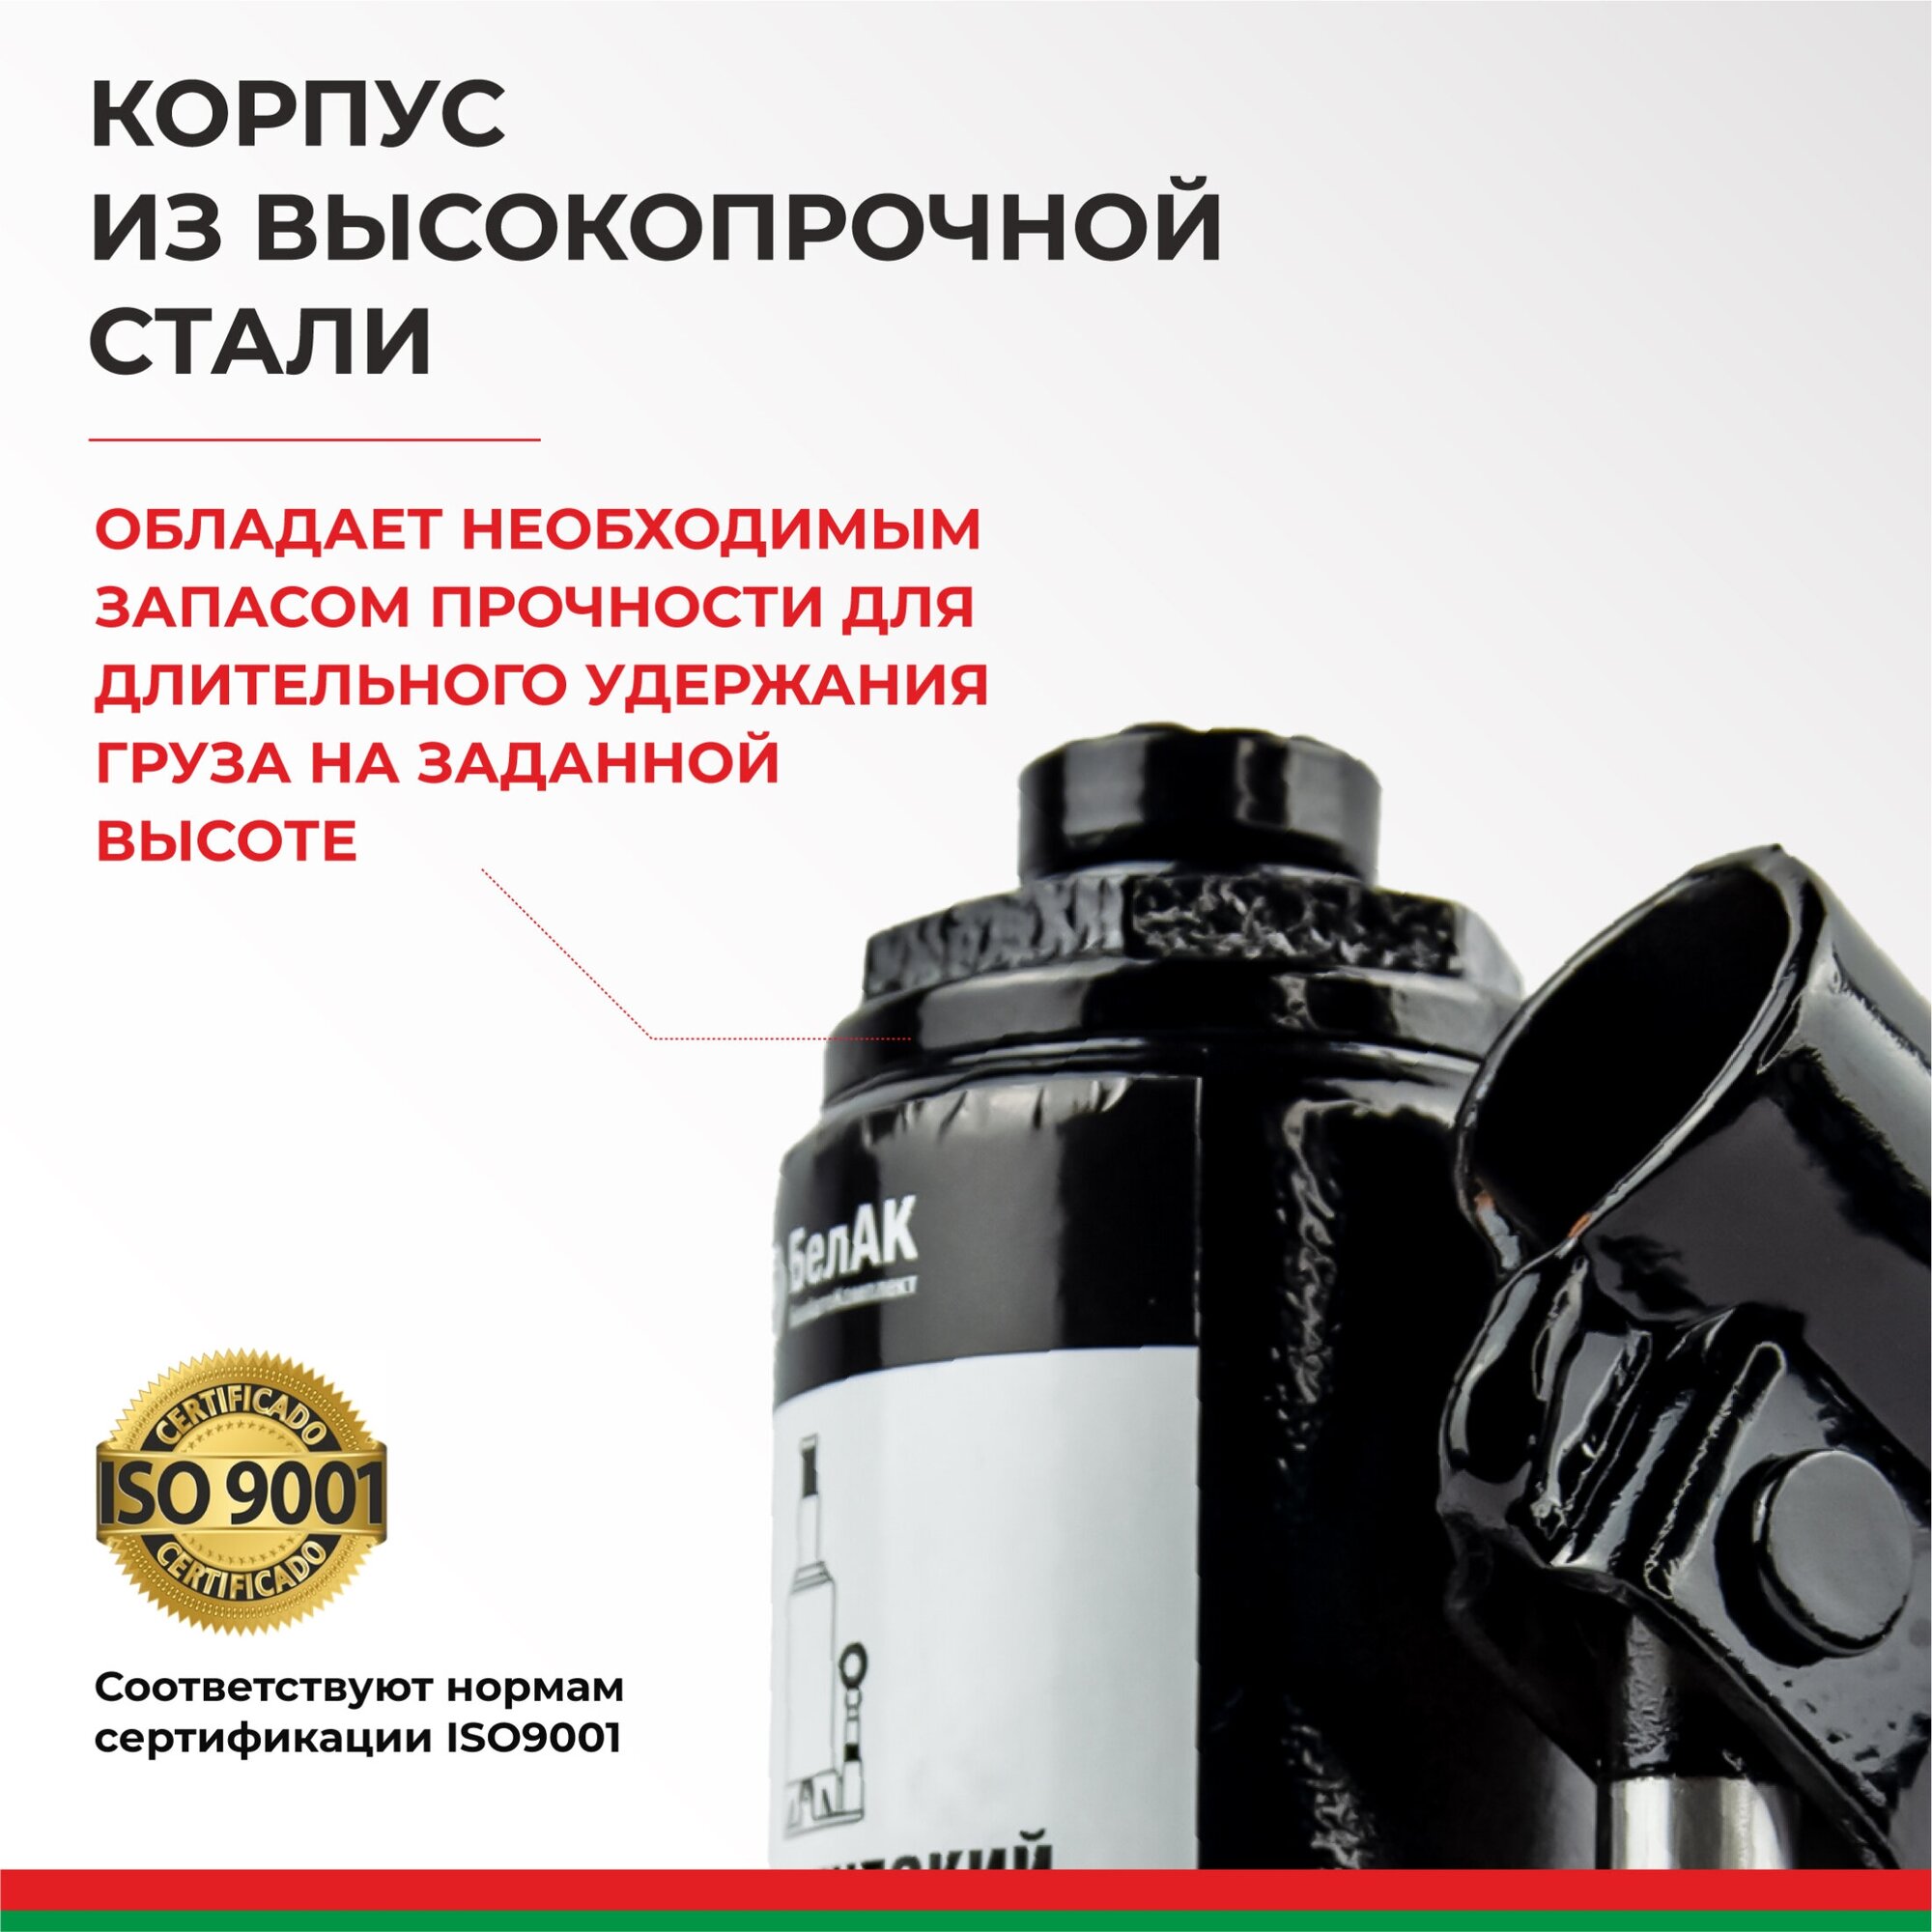 Домкрат бутылочный гидравлический БелАК БАК00039 (2 т)